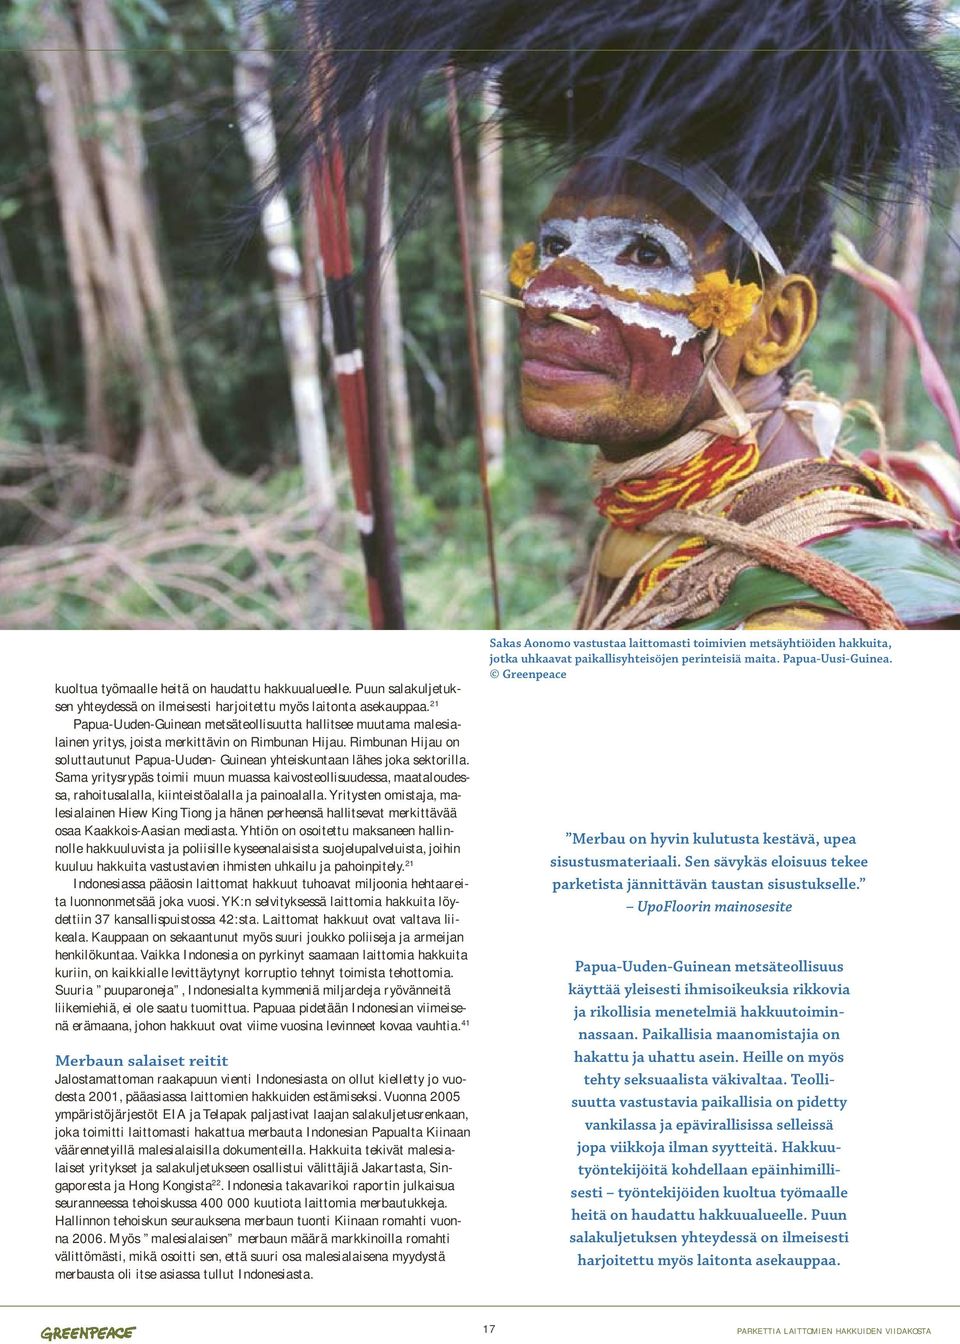 Rimbunan Hijau on soluttautunut Papua-Uuden- Guinean yhteiskuntaan lähes joka sektorilla.